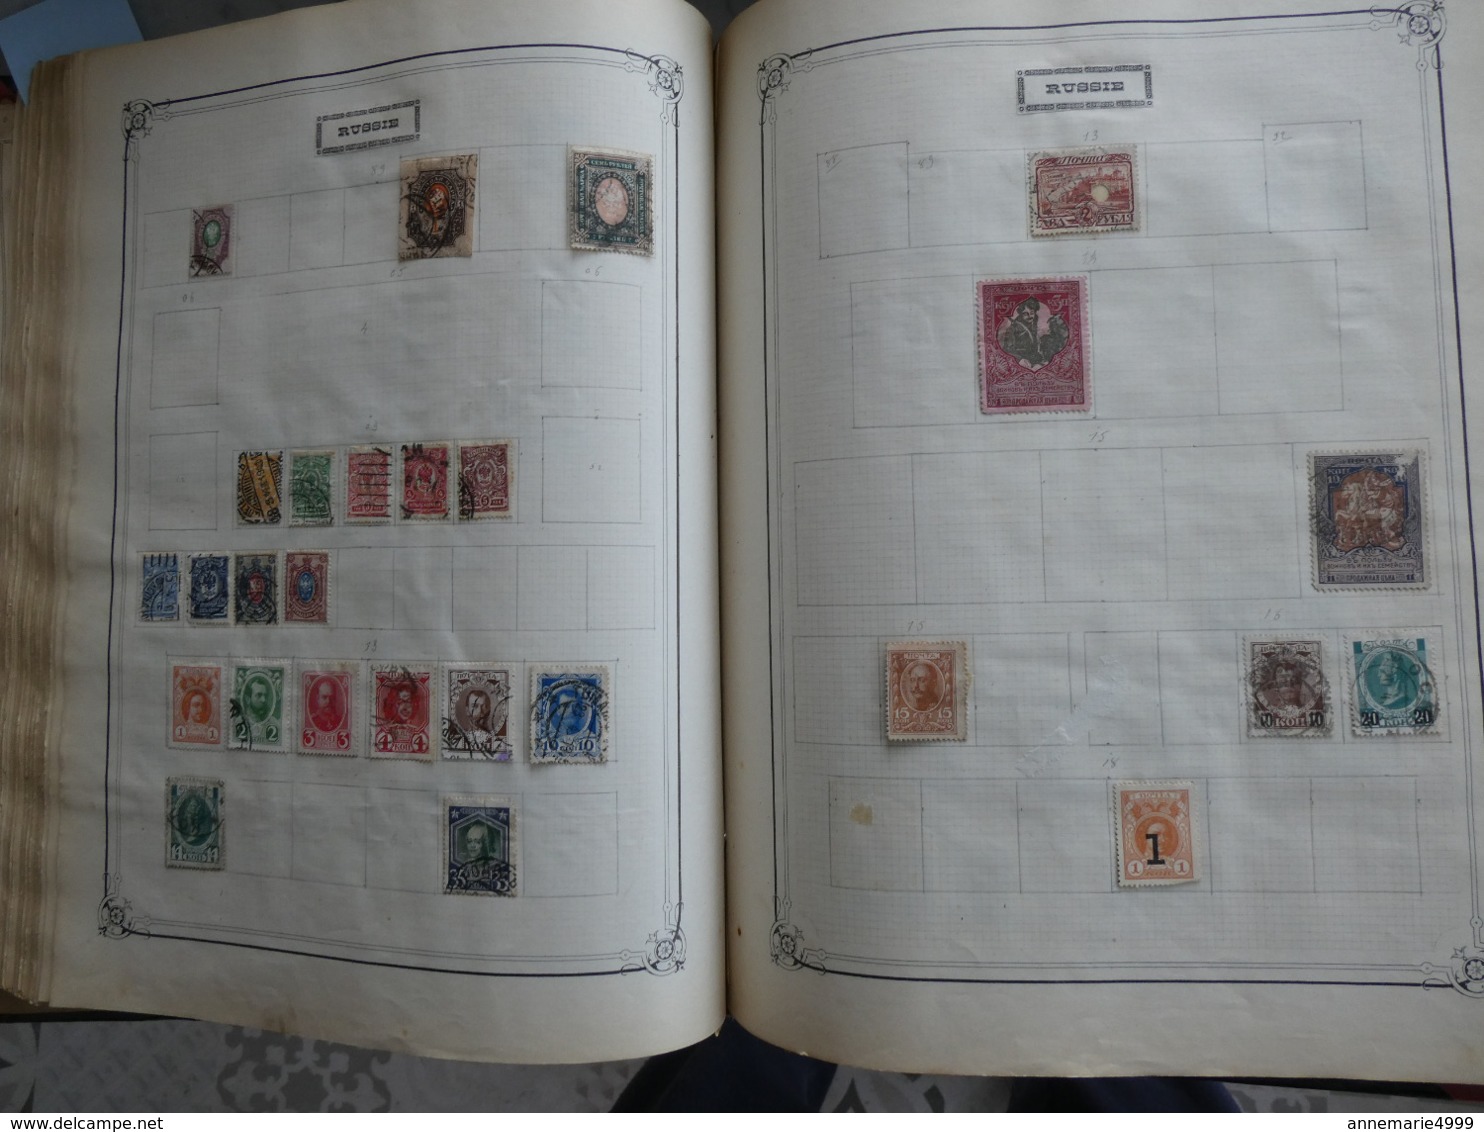 MONDE  Collection de plusieurs milliers de timbres anciens tous pays